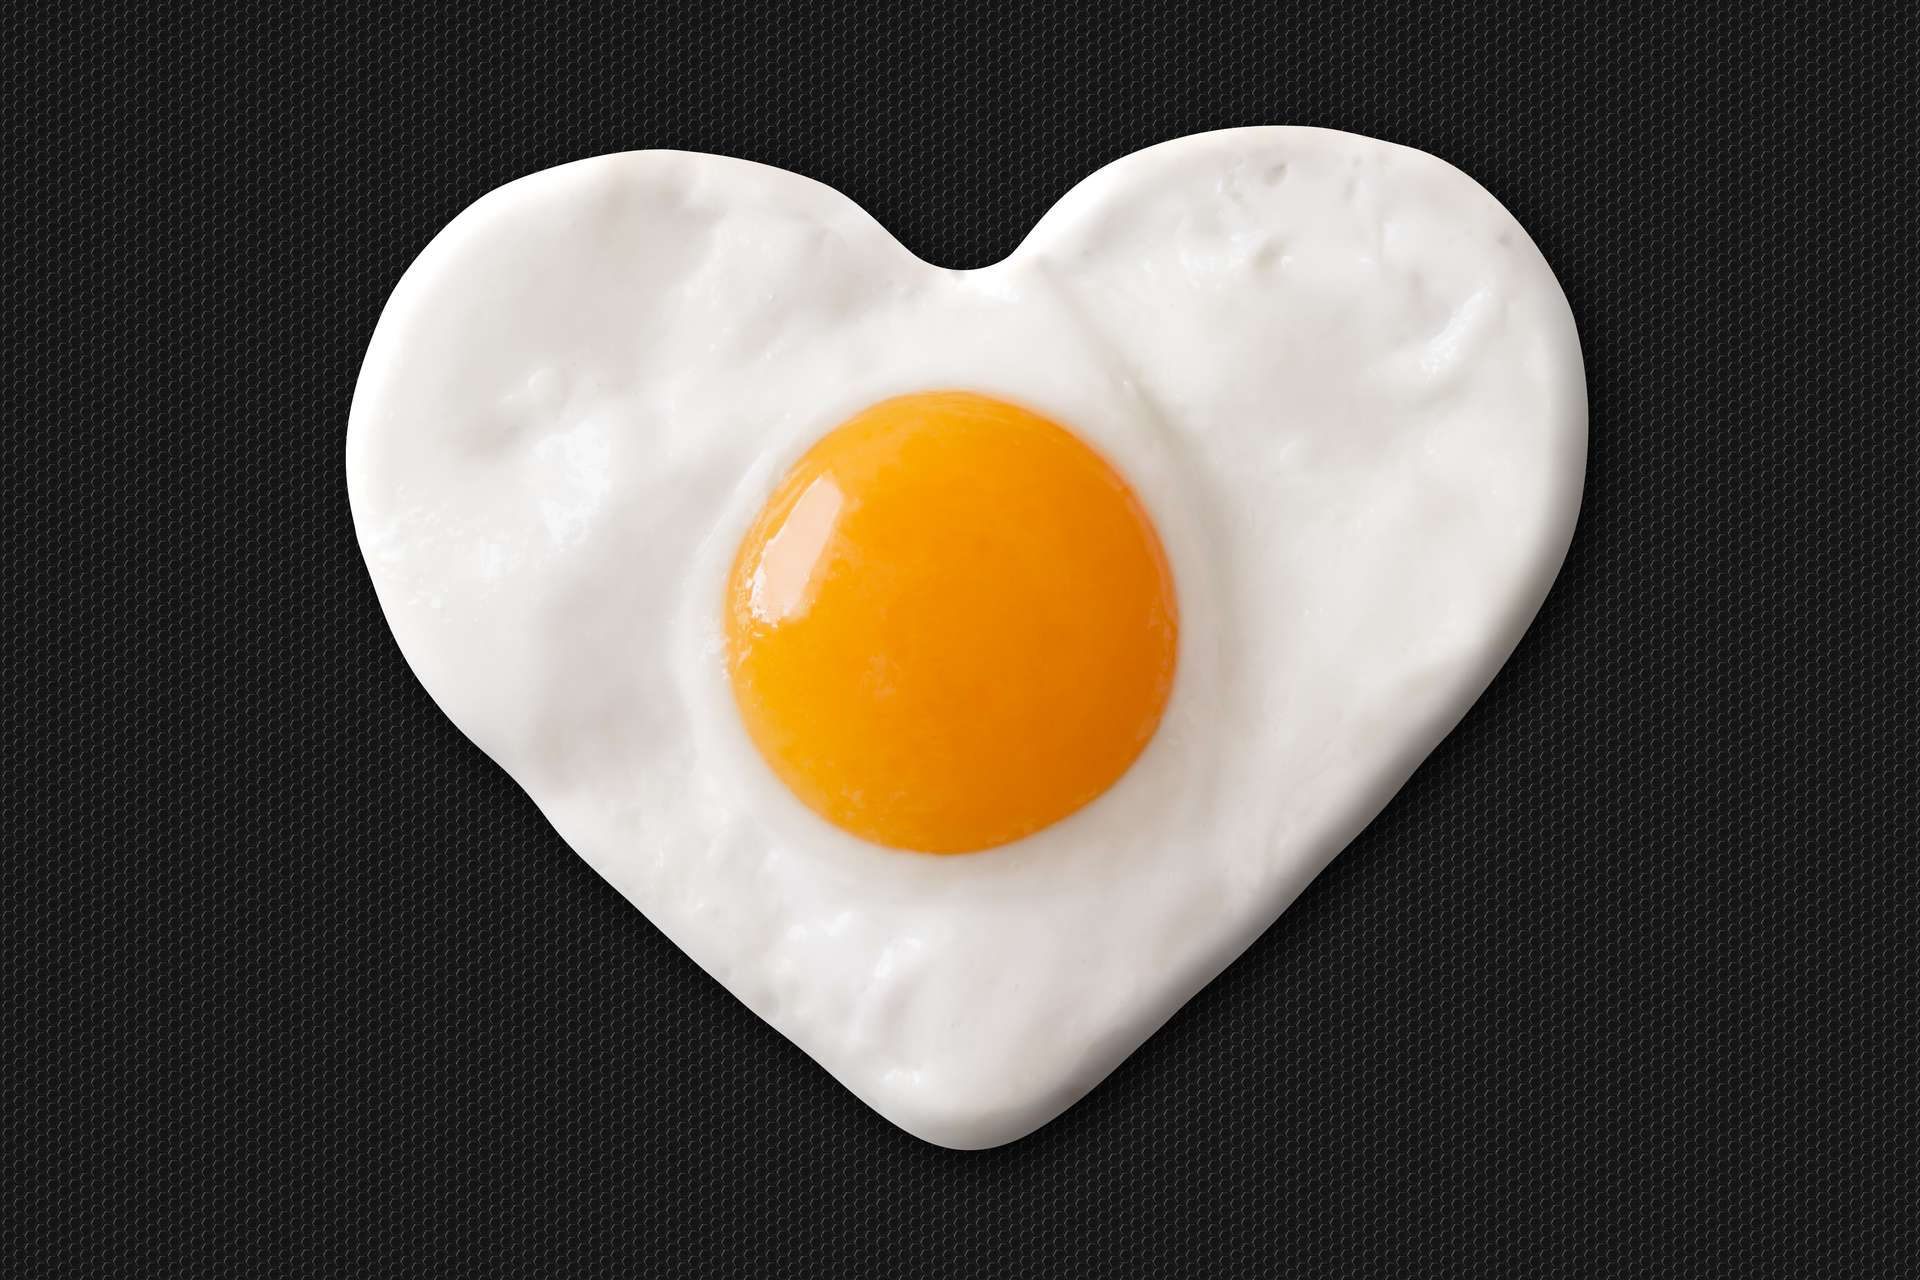 Taux De Cholesterol Eleve Maladies Cardiaques Et œufs Pas De Lien Reel